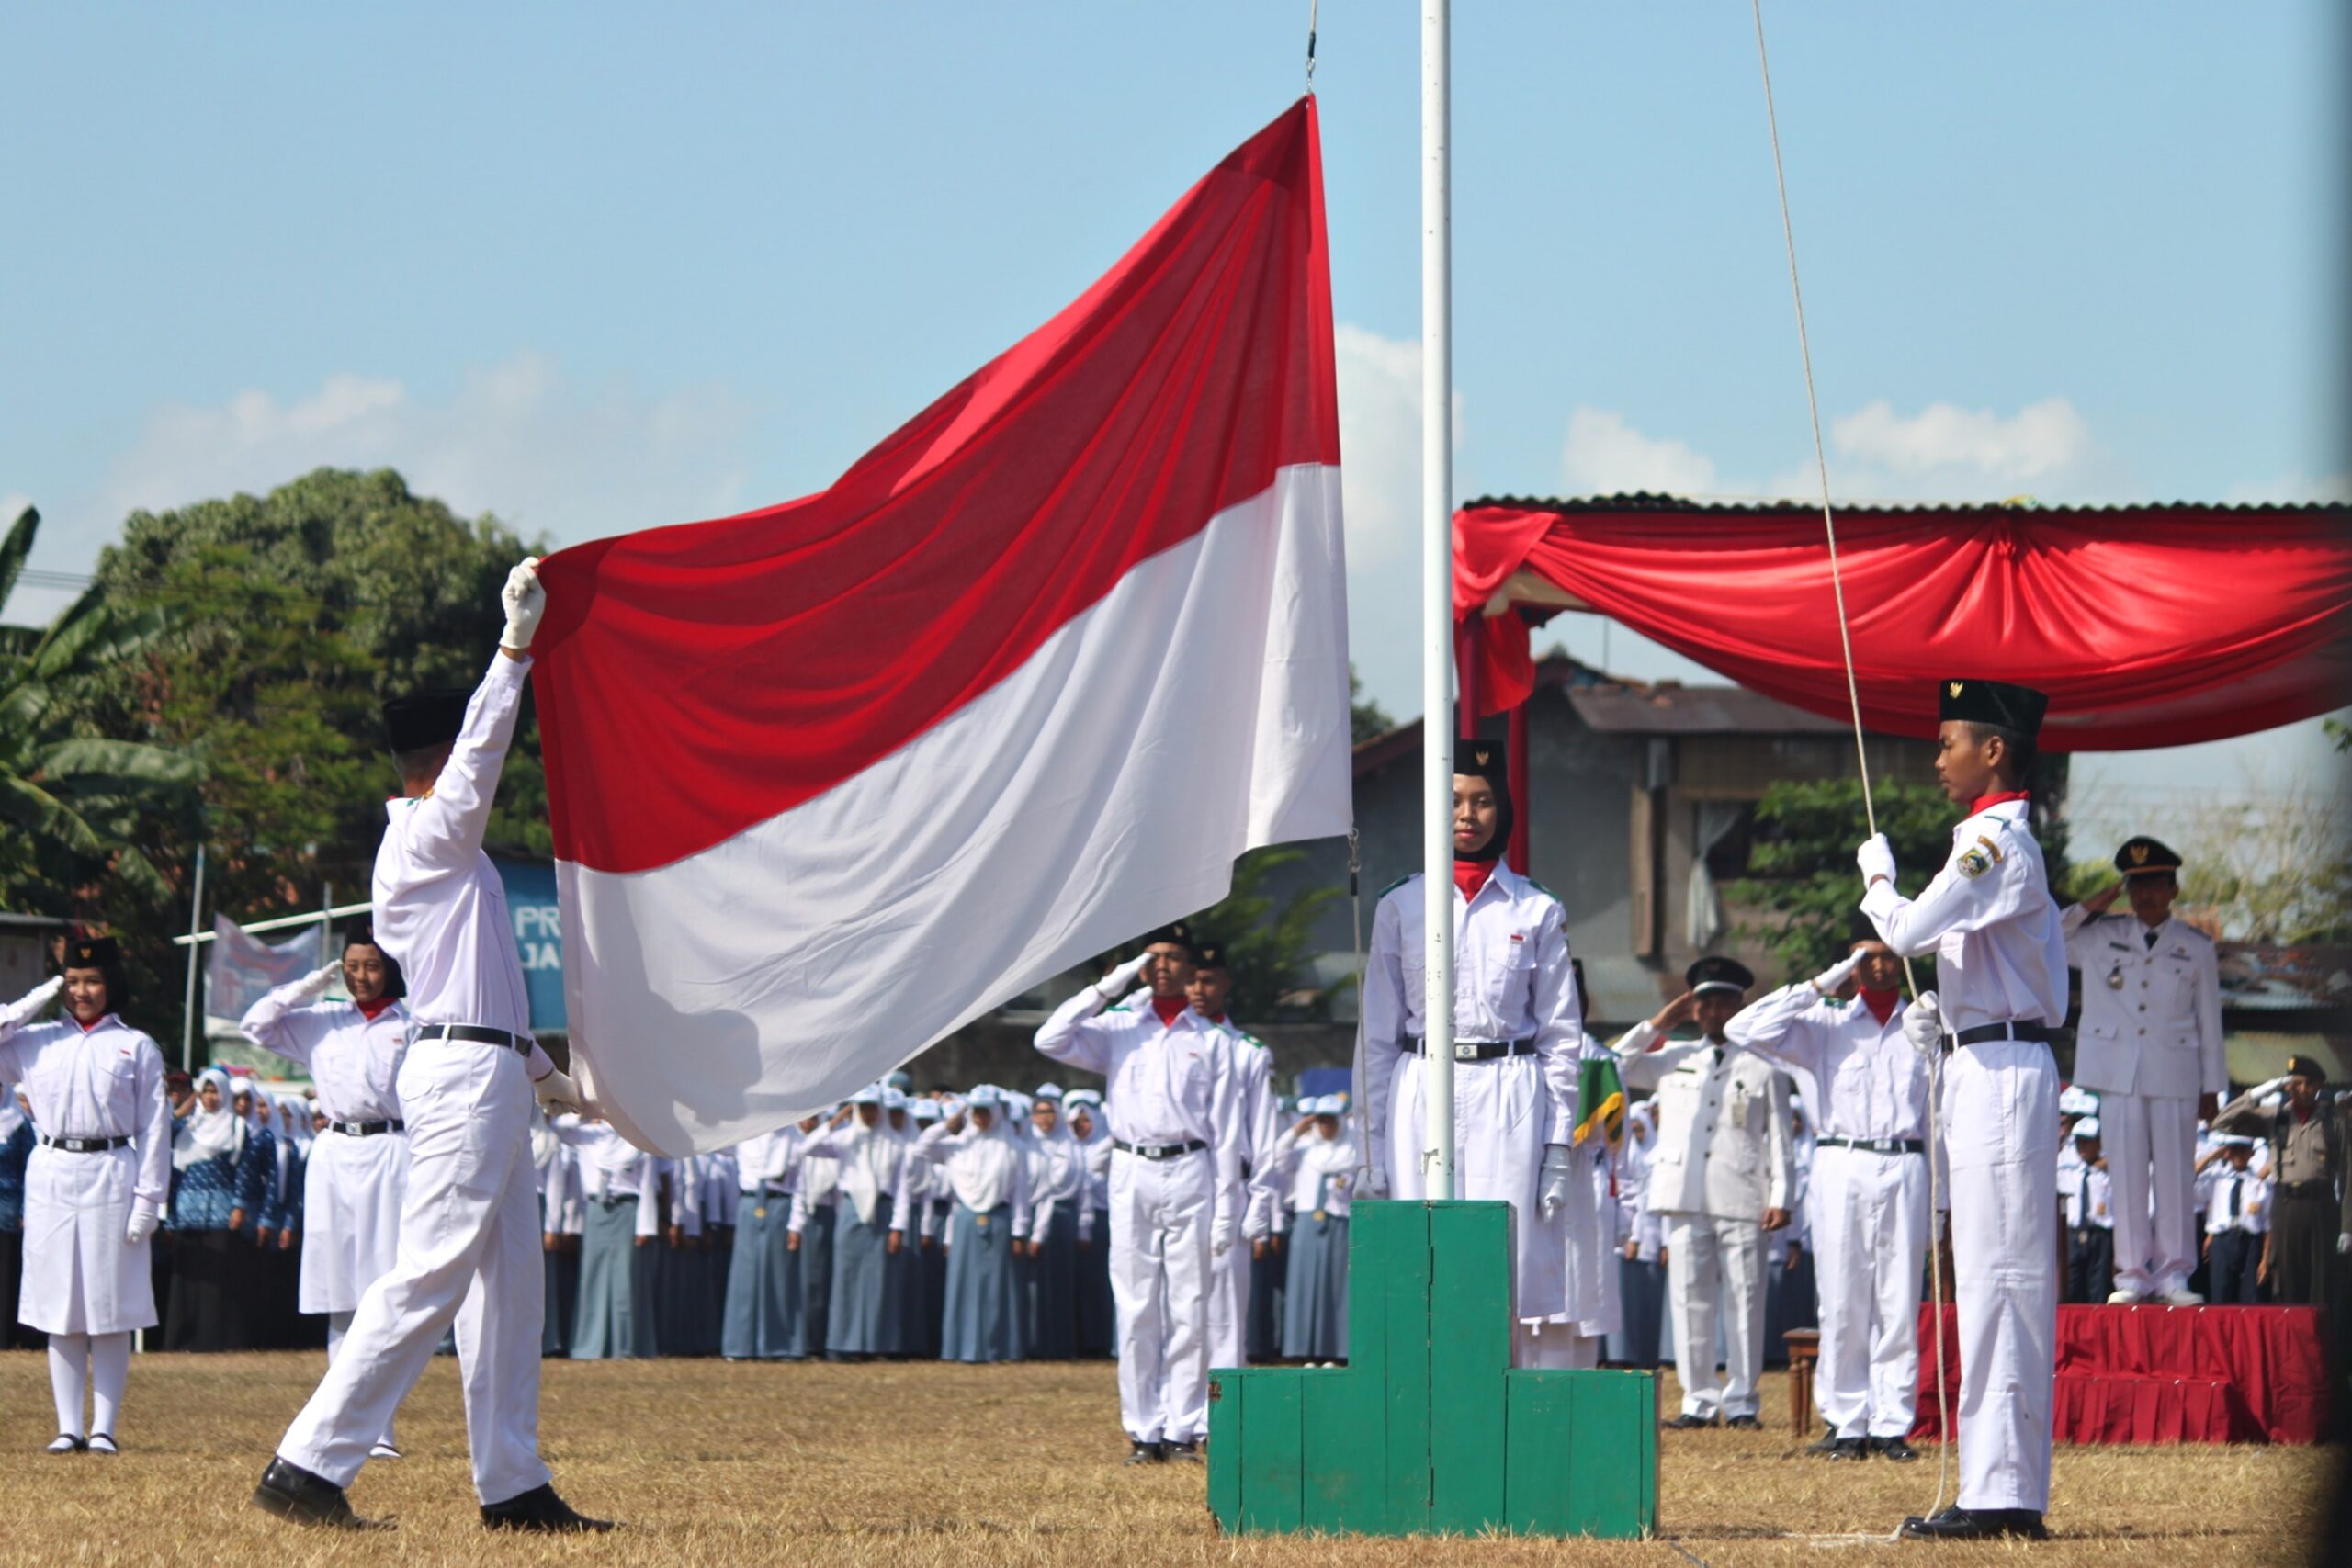 flag raising ceremony in Indonesia